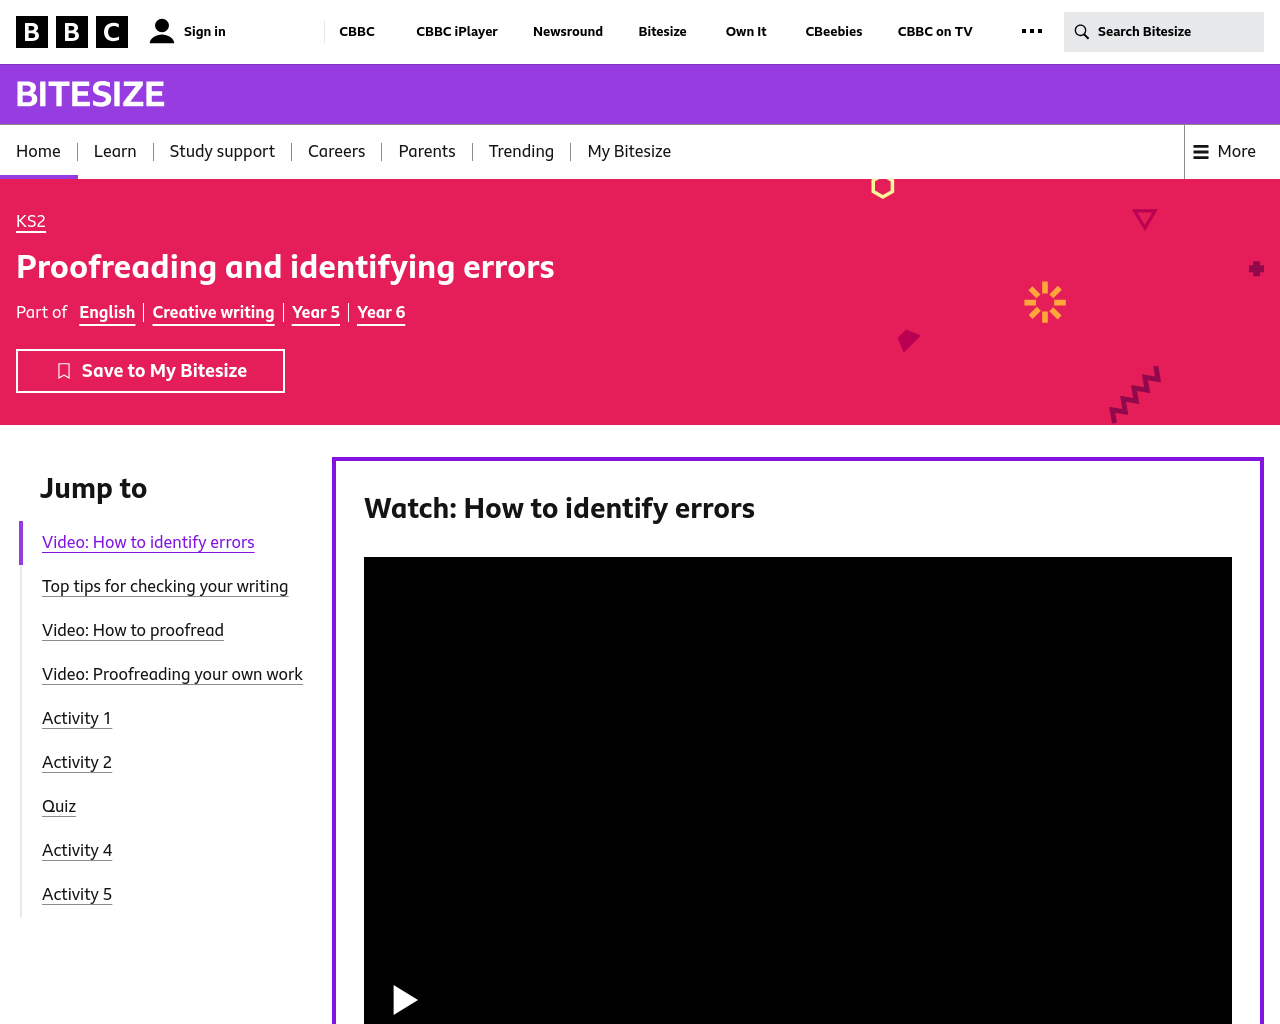 BBC- how to identify errors